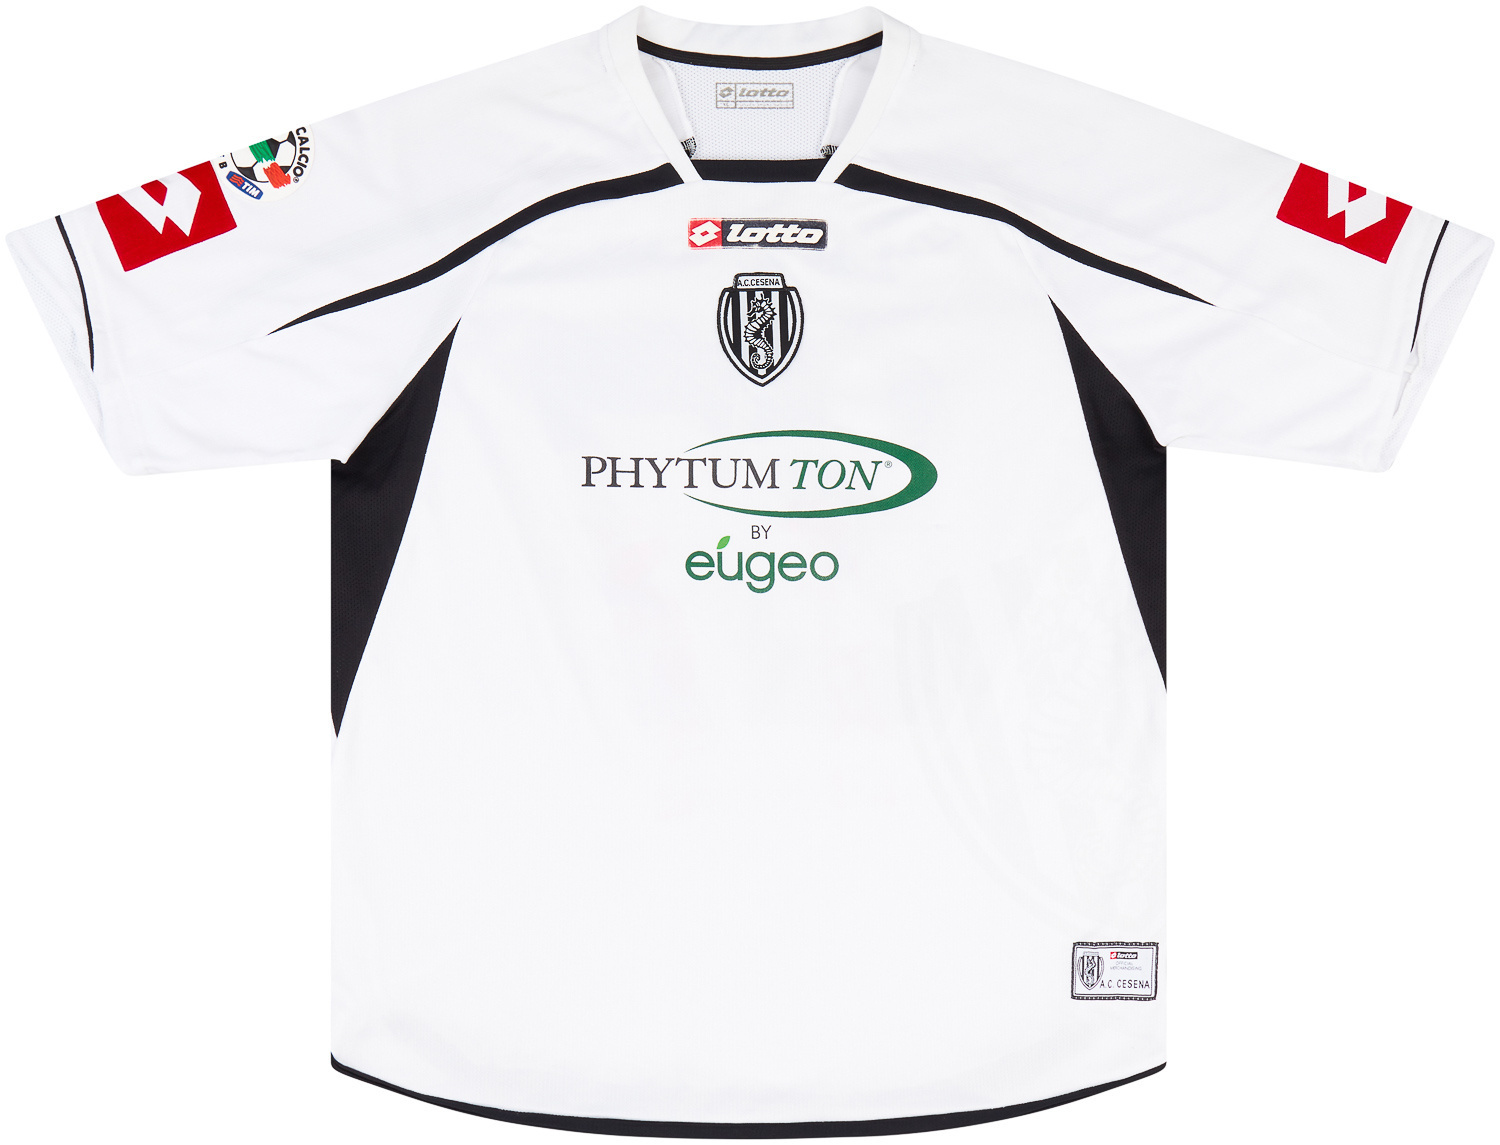 2009-10 Cesena Match Issue Home Shirt Petras #27